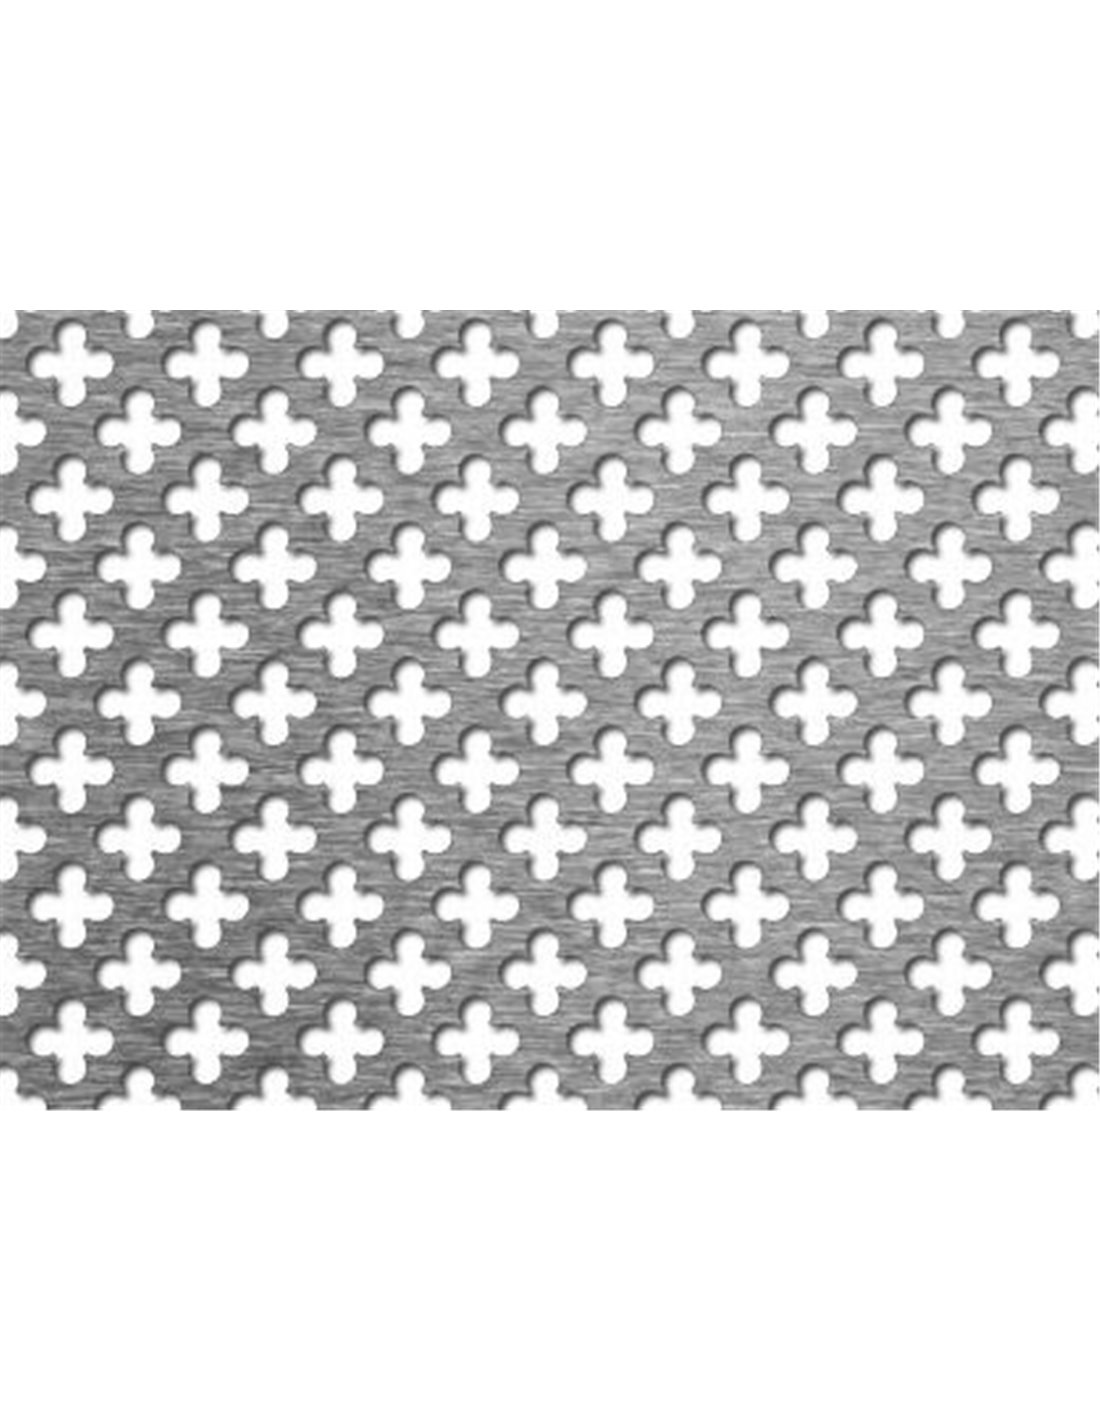 Tôle perforée motif trèfle et rond 2000 x 1000 x 1mm - La Mine de Fer